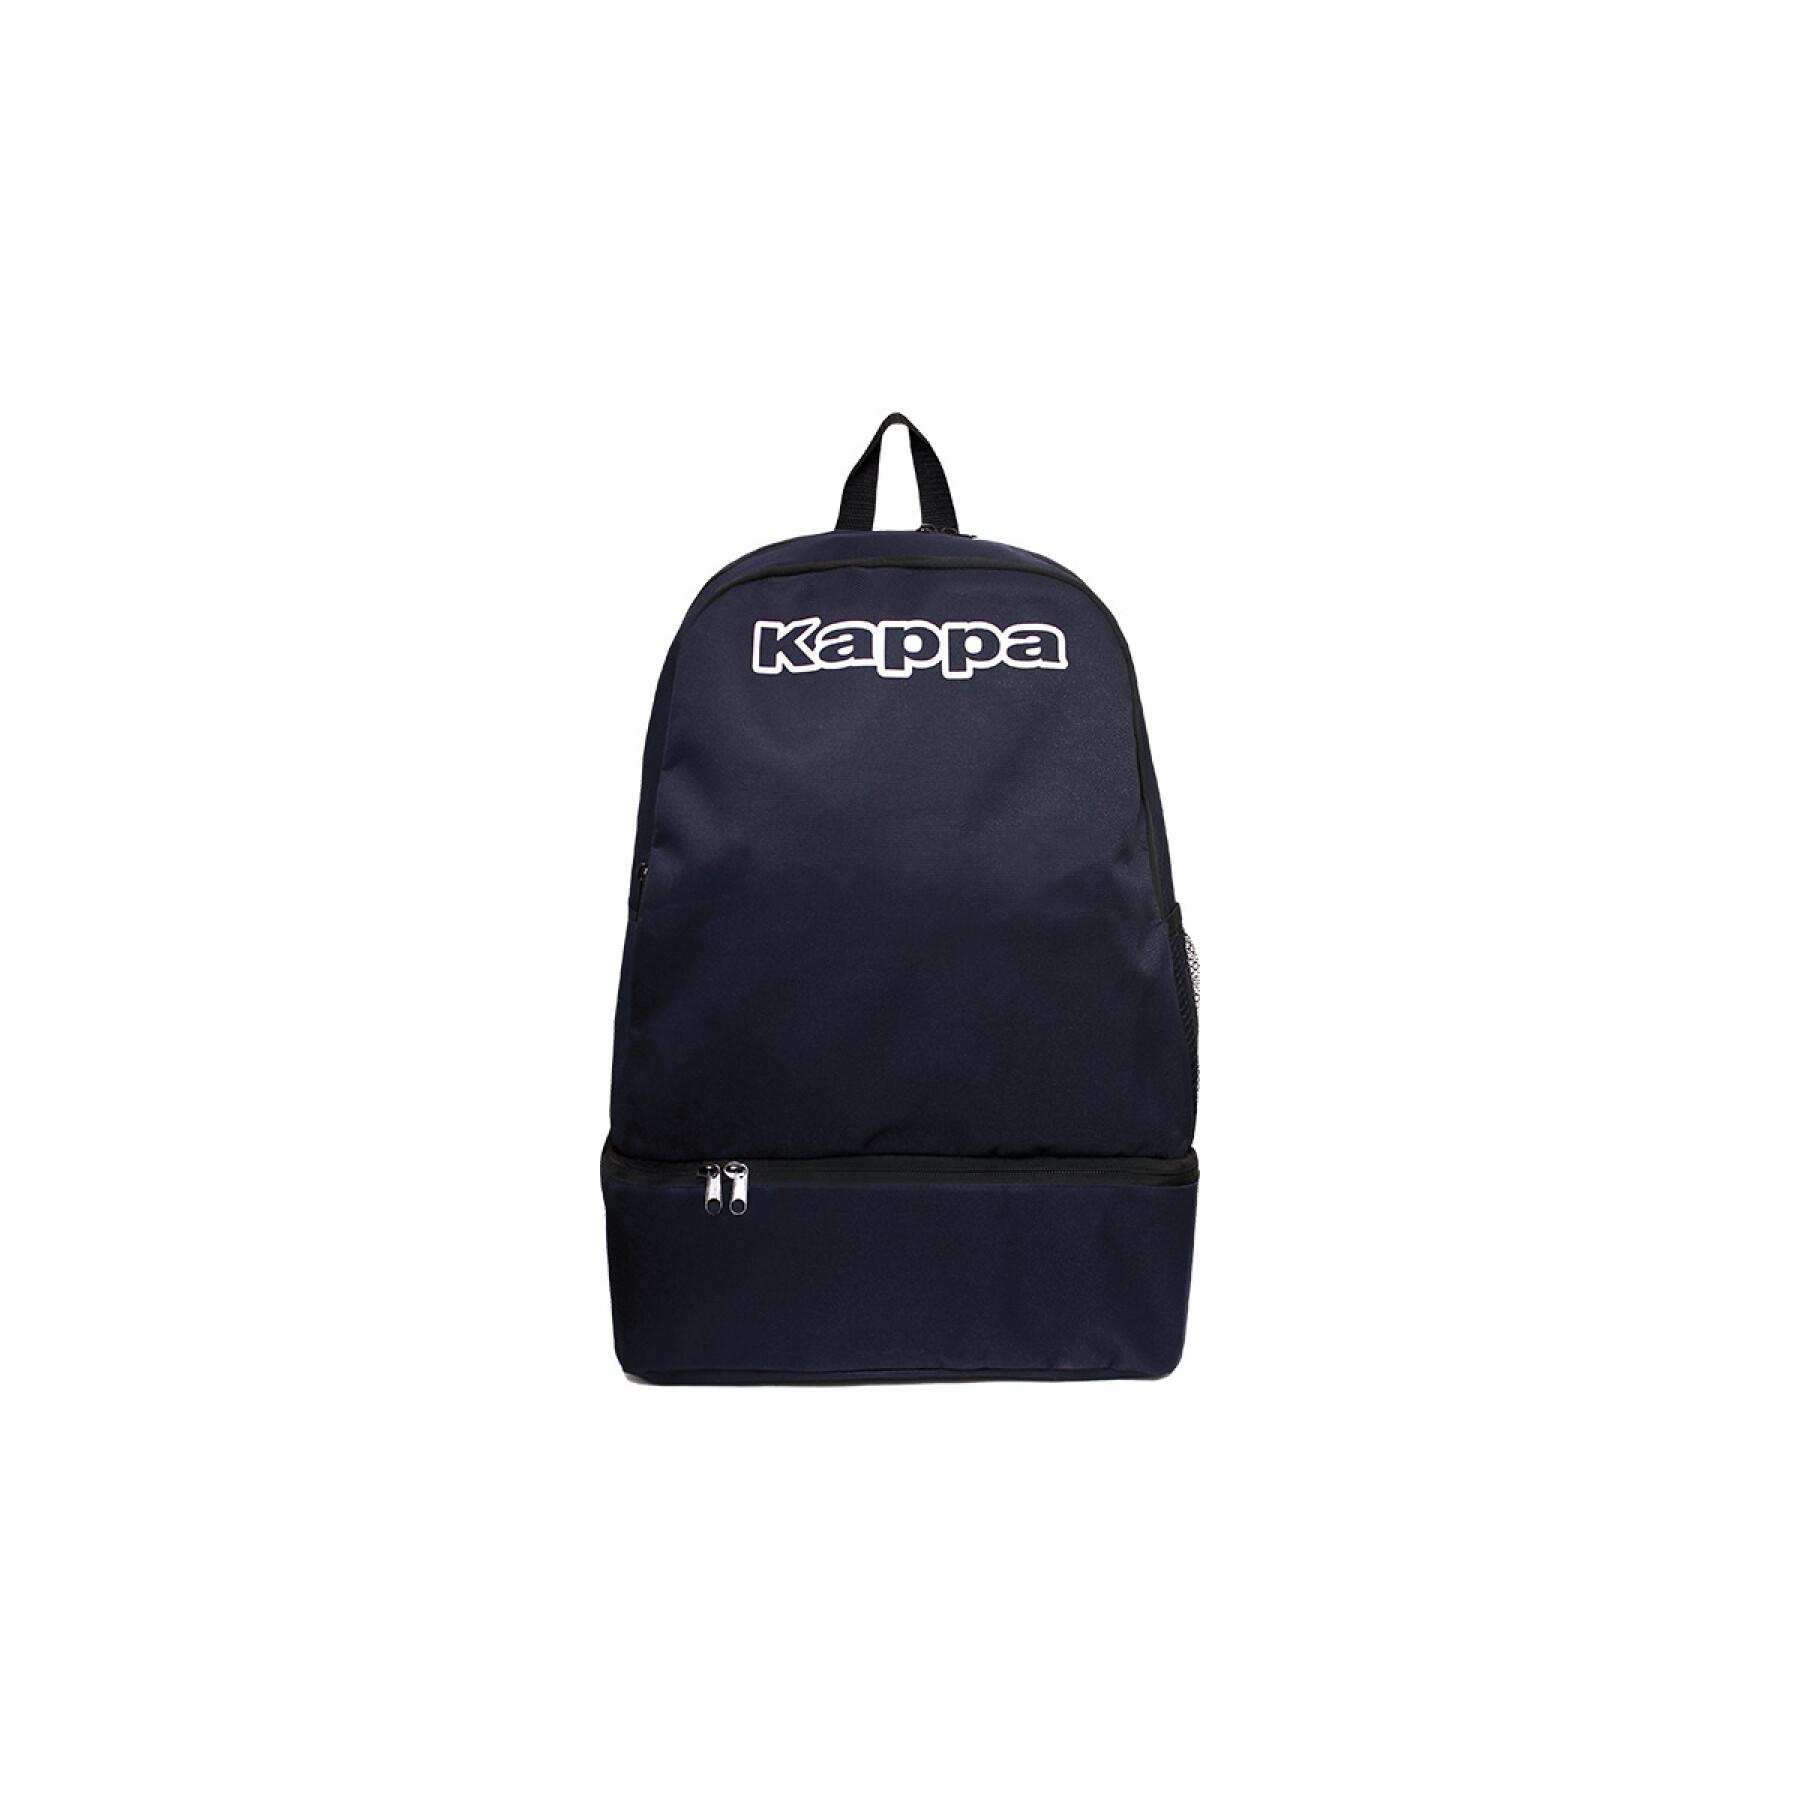 Rucksack Kappa backpack